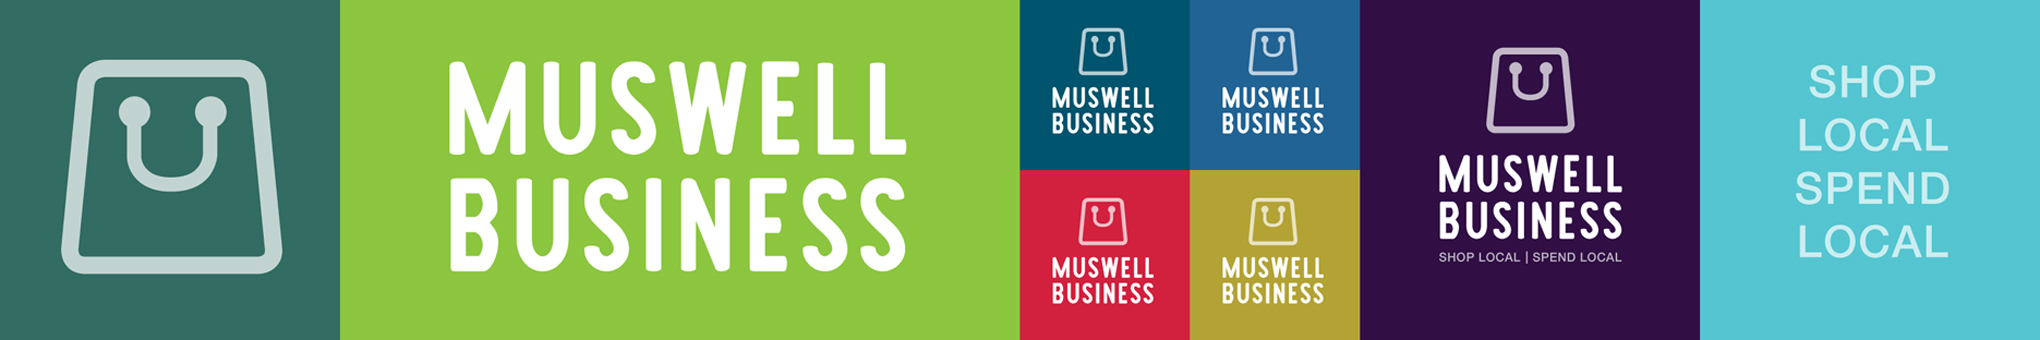 Muswell Business website header